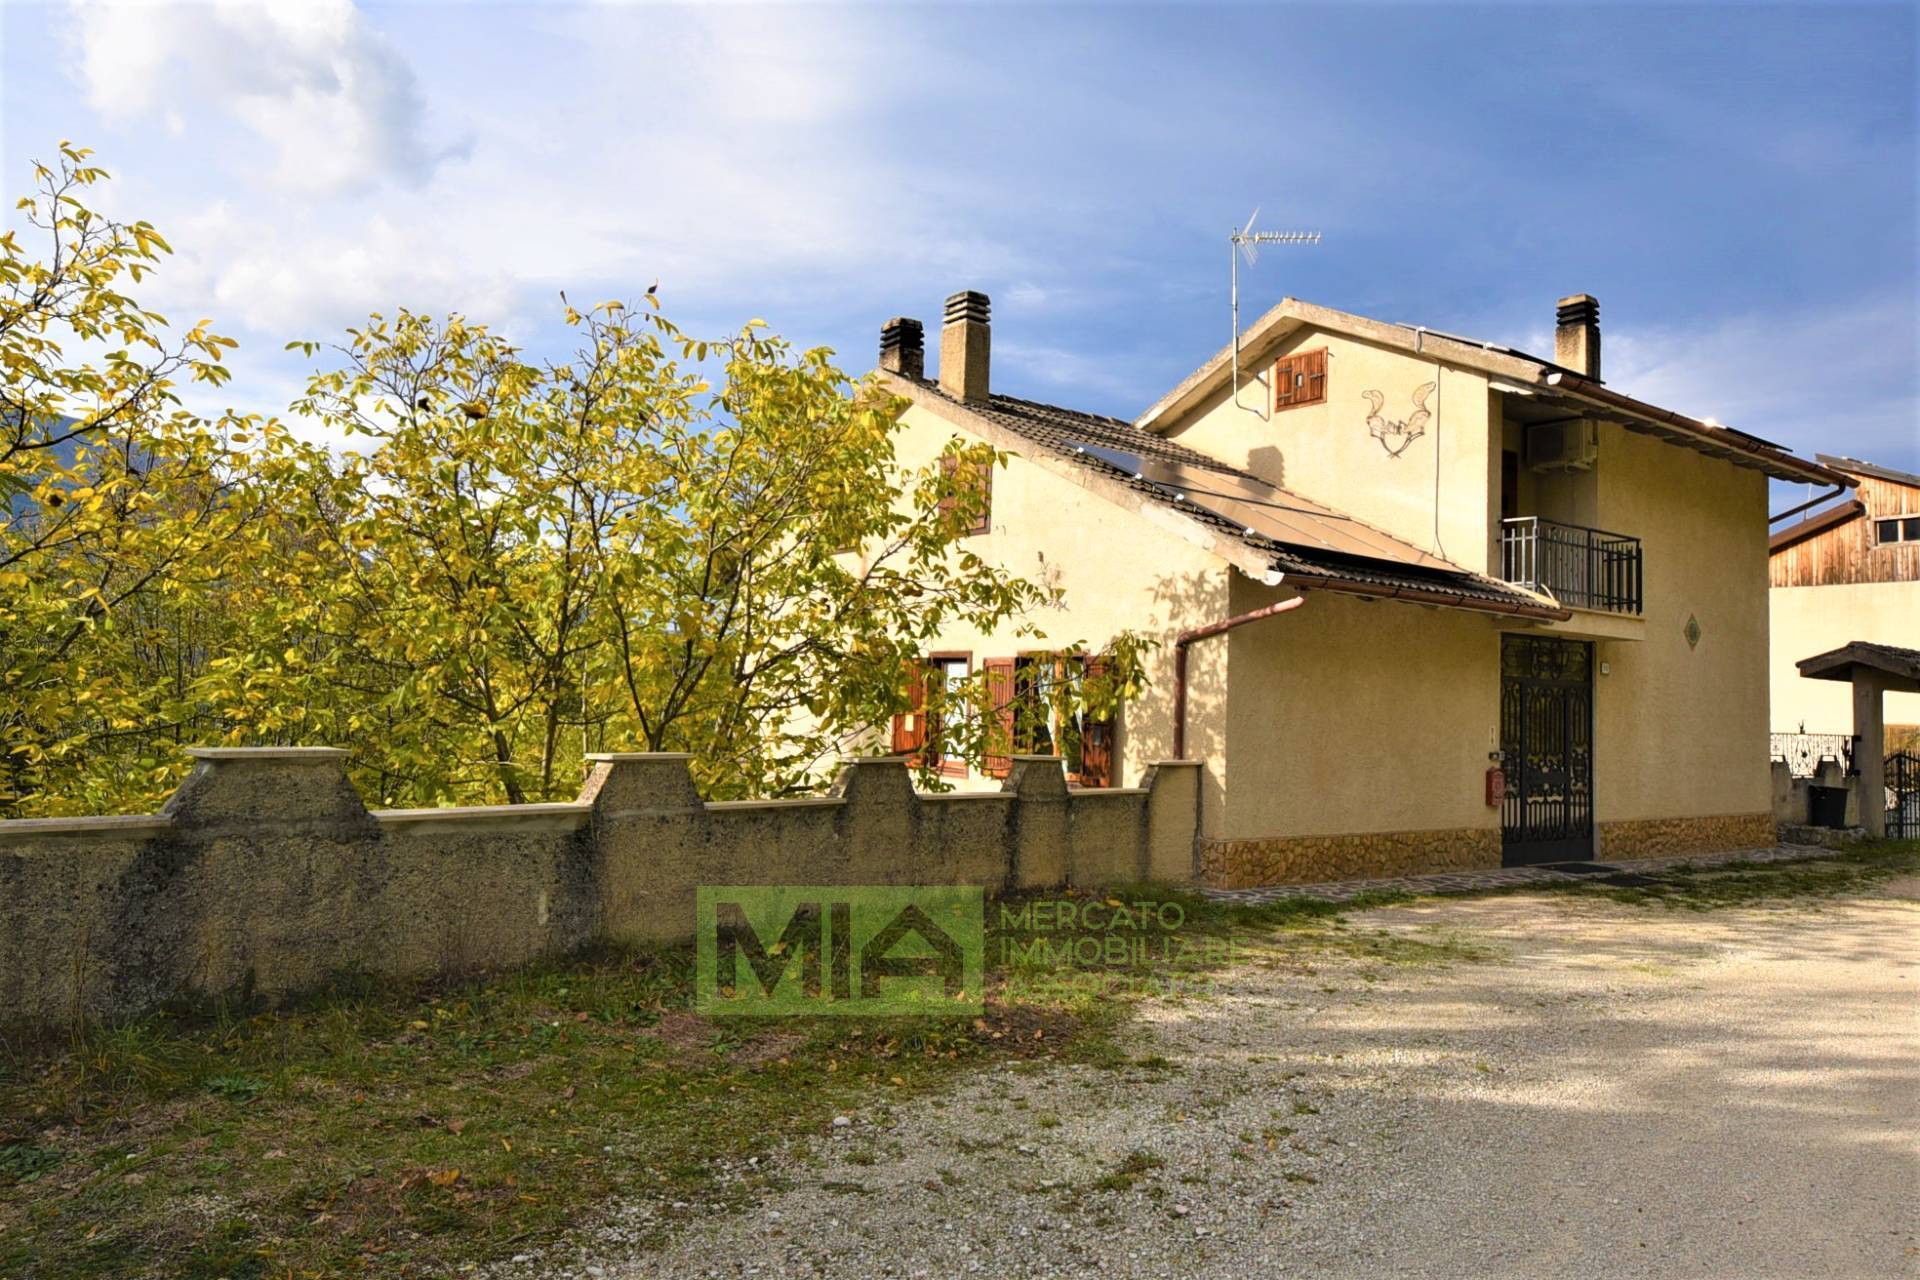 Villa in vendita a Montefortino, 10 locali, zona Località: Periferia, prezzo € 180.000 | PortaleAgenzieImmobiliari.it